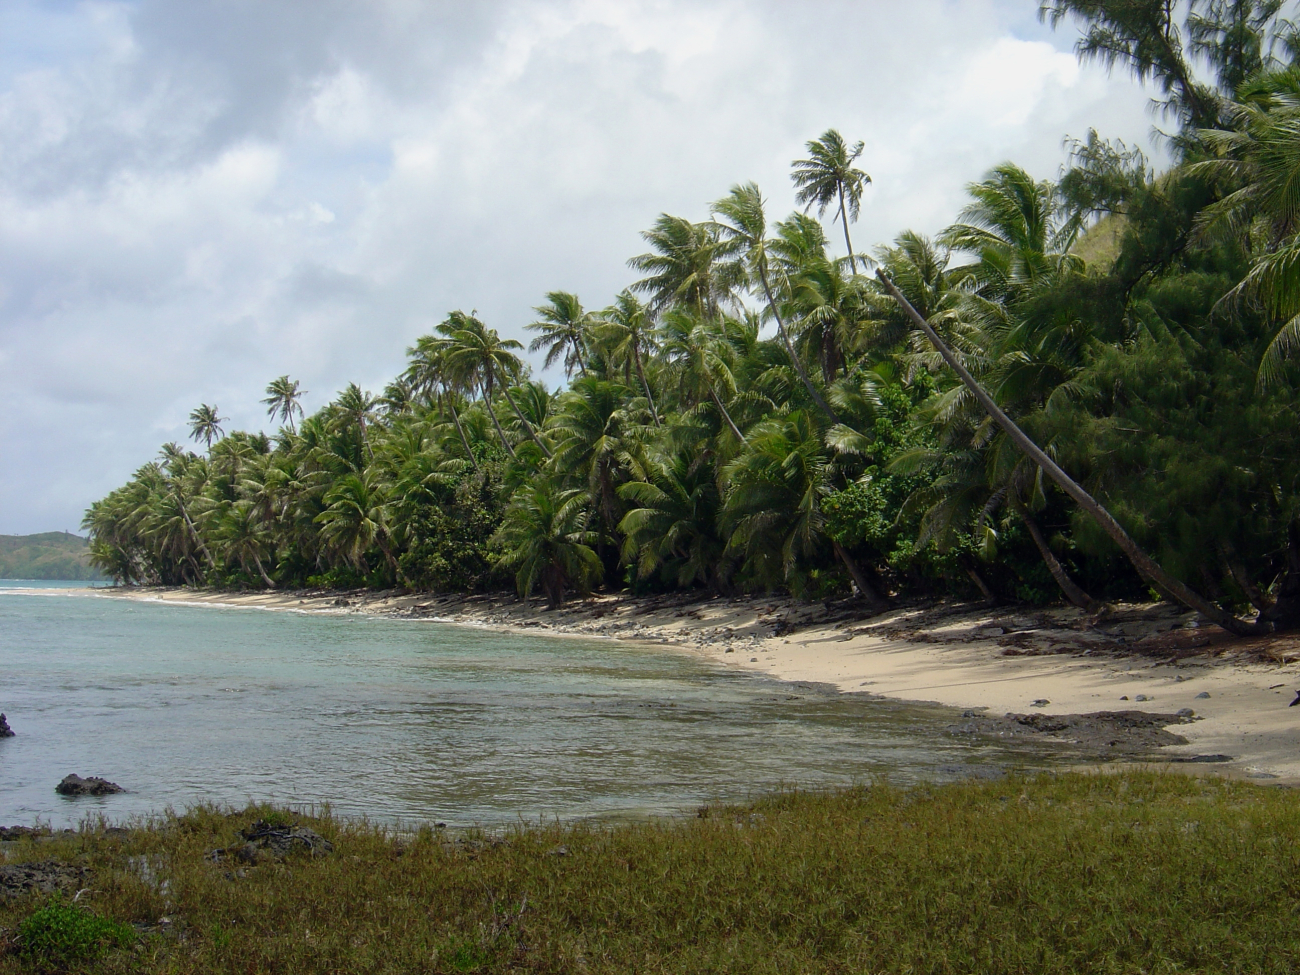 A palm-lined jungle coastline on Guam